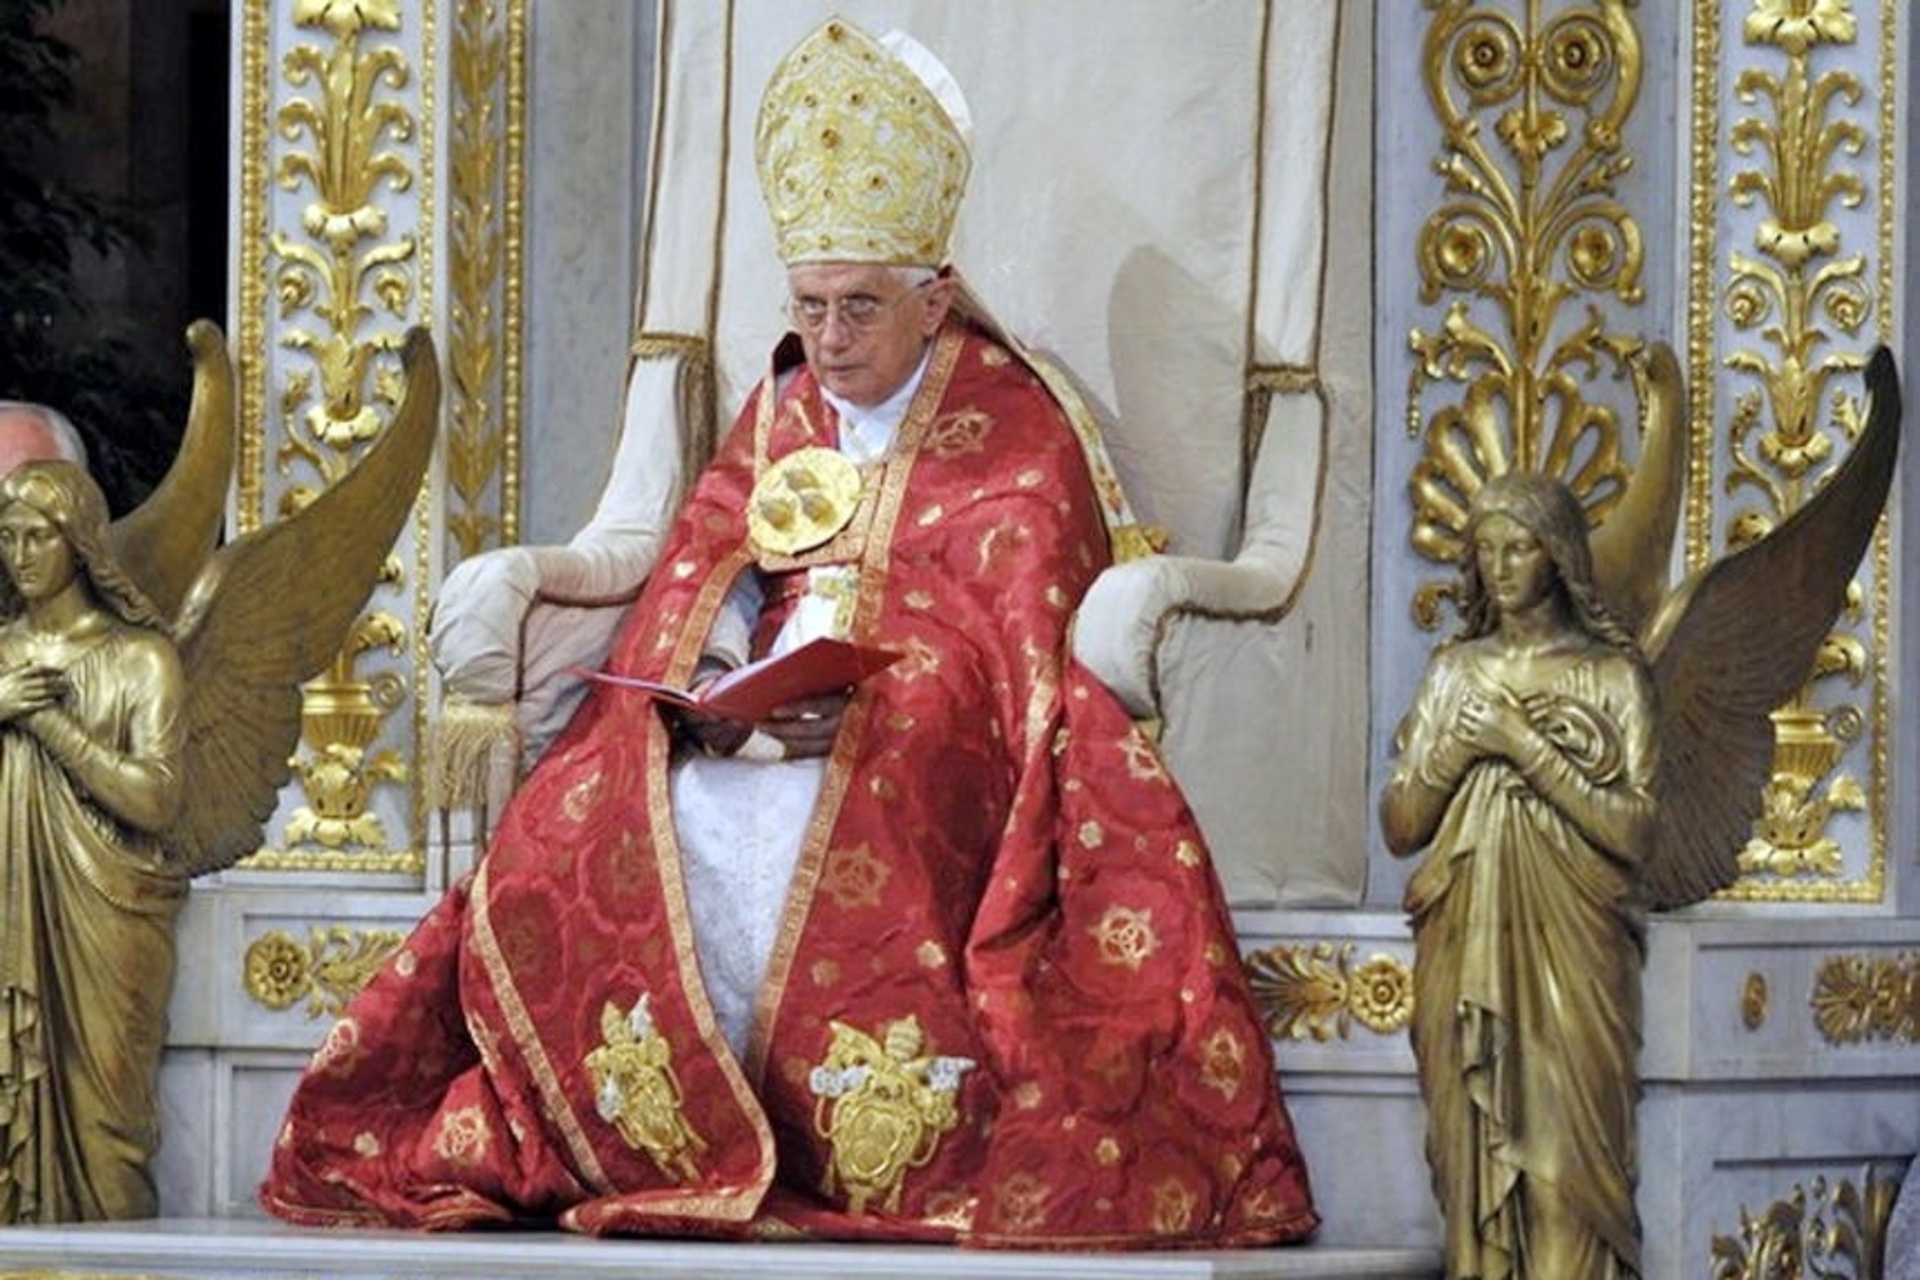 Pāvests Benedikts XVI: Benedikts XVI, dzimis Džozefs Ratcingers, 265. katoļu baznīcas pāvests un Romas bīskaps, vadīja Pāvila gada atklāšanas ceremoniju 29. gada 2008. jūnijā